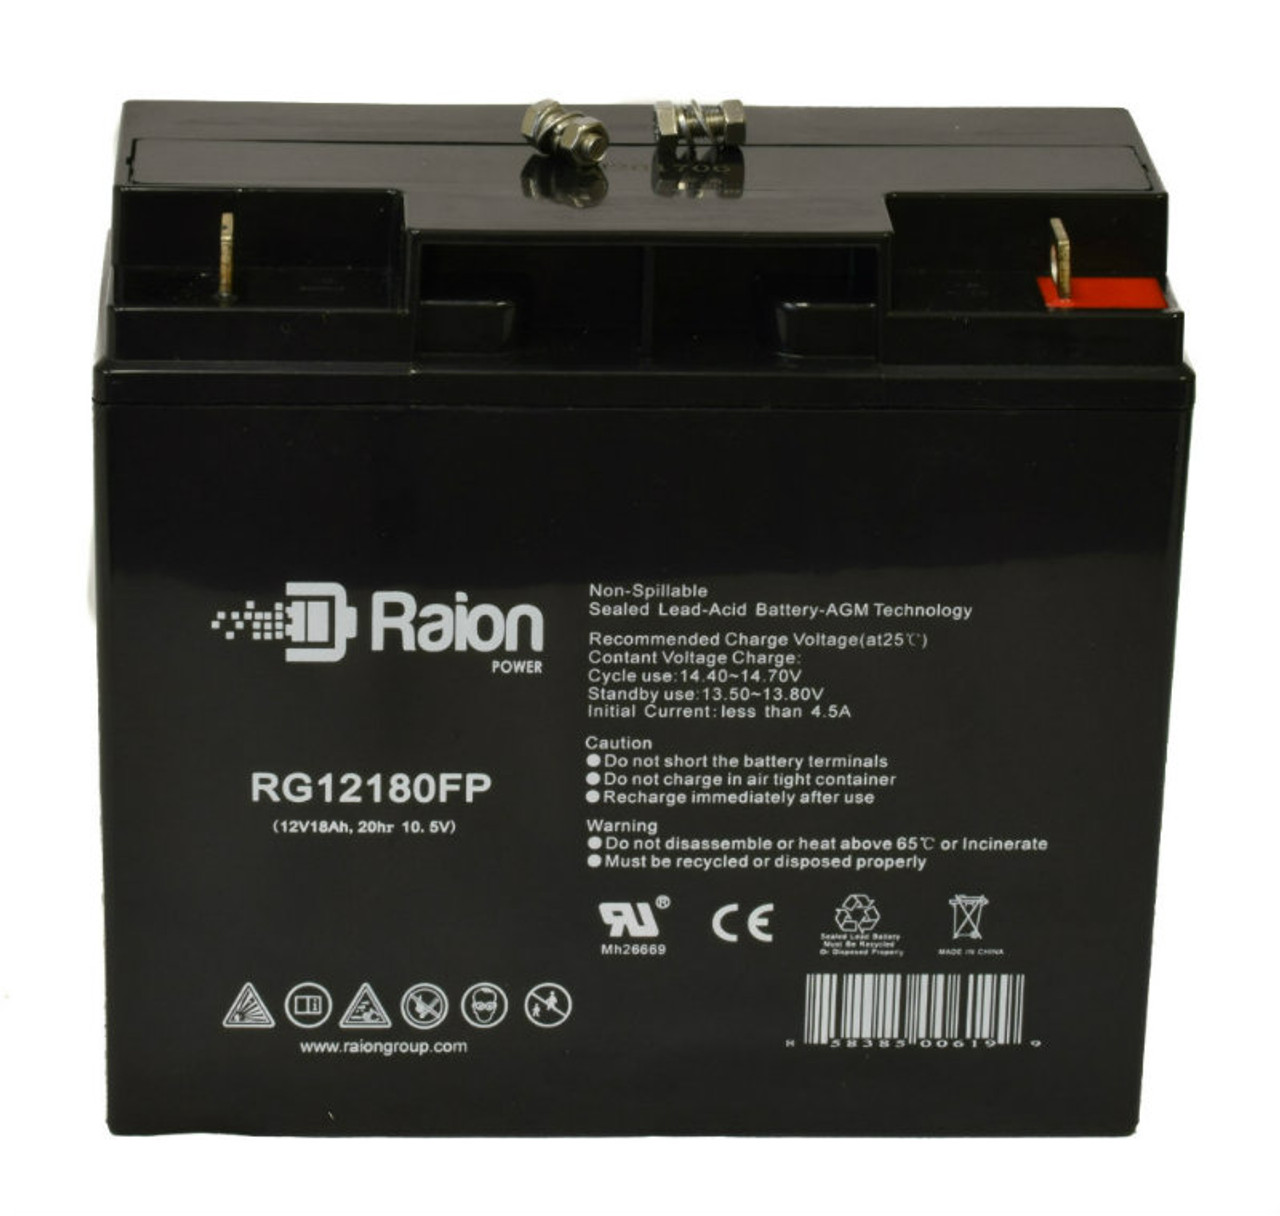 Raion Power RG12180FP 12V 18Ah Lead Acid Battery for Zeus PC17-12NB